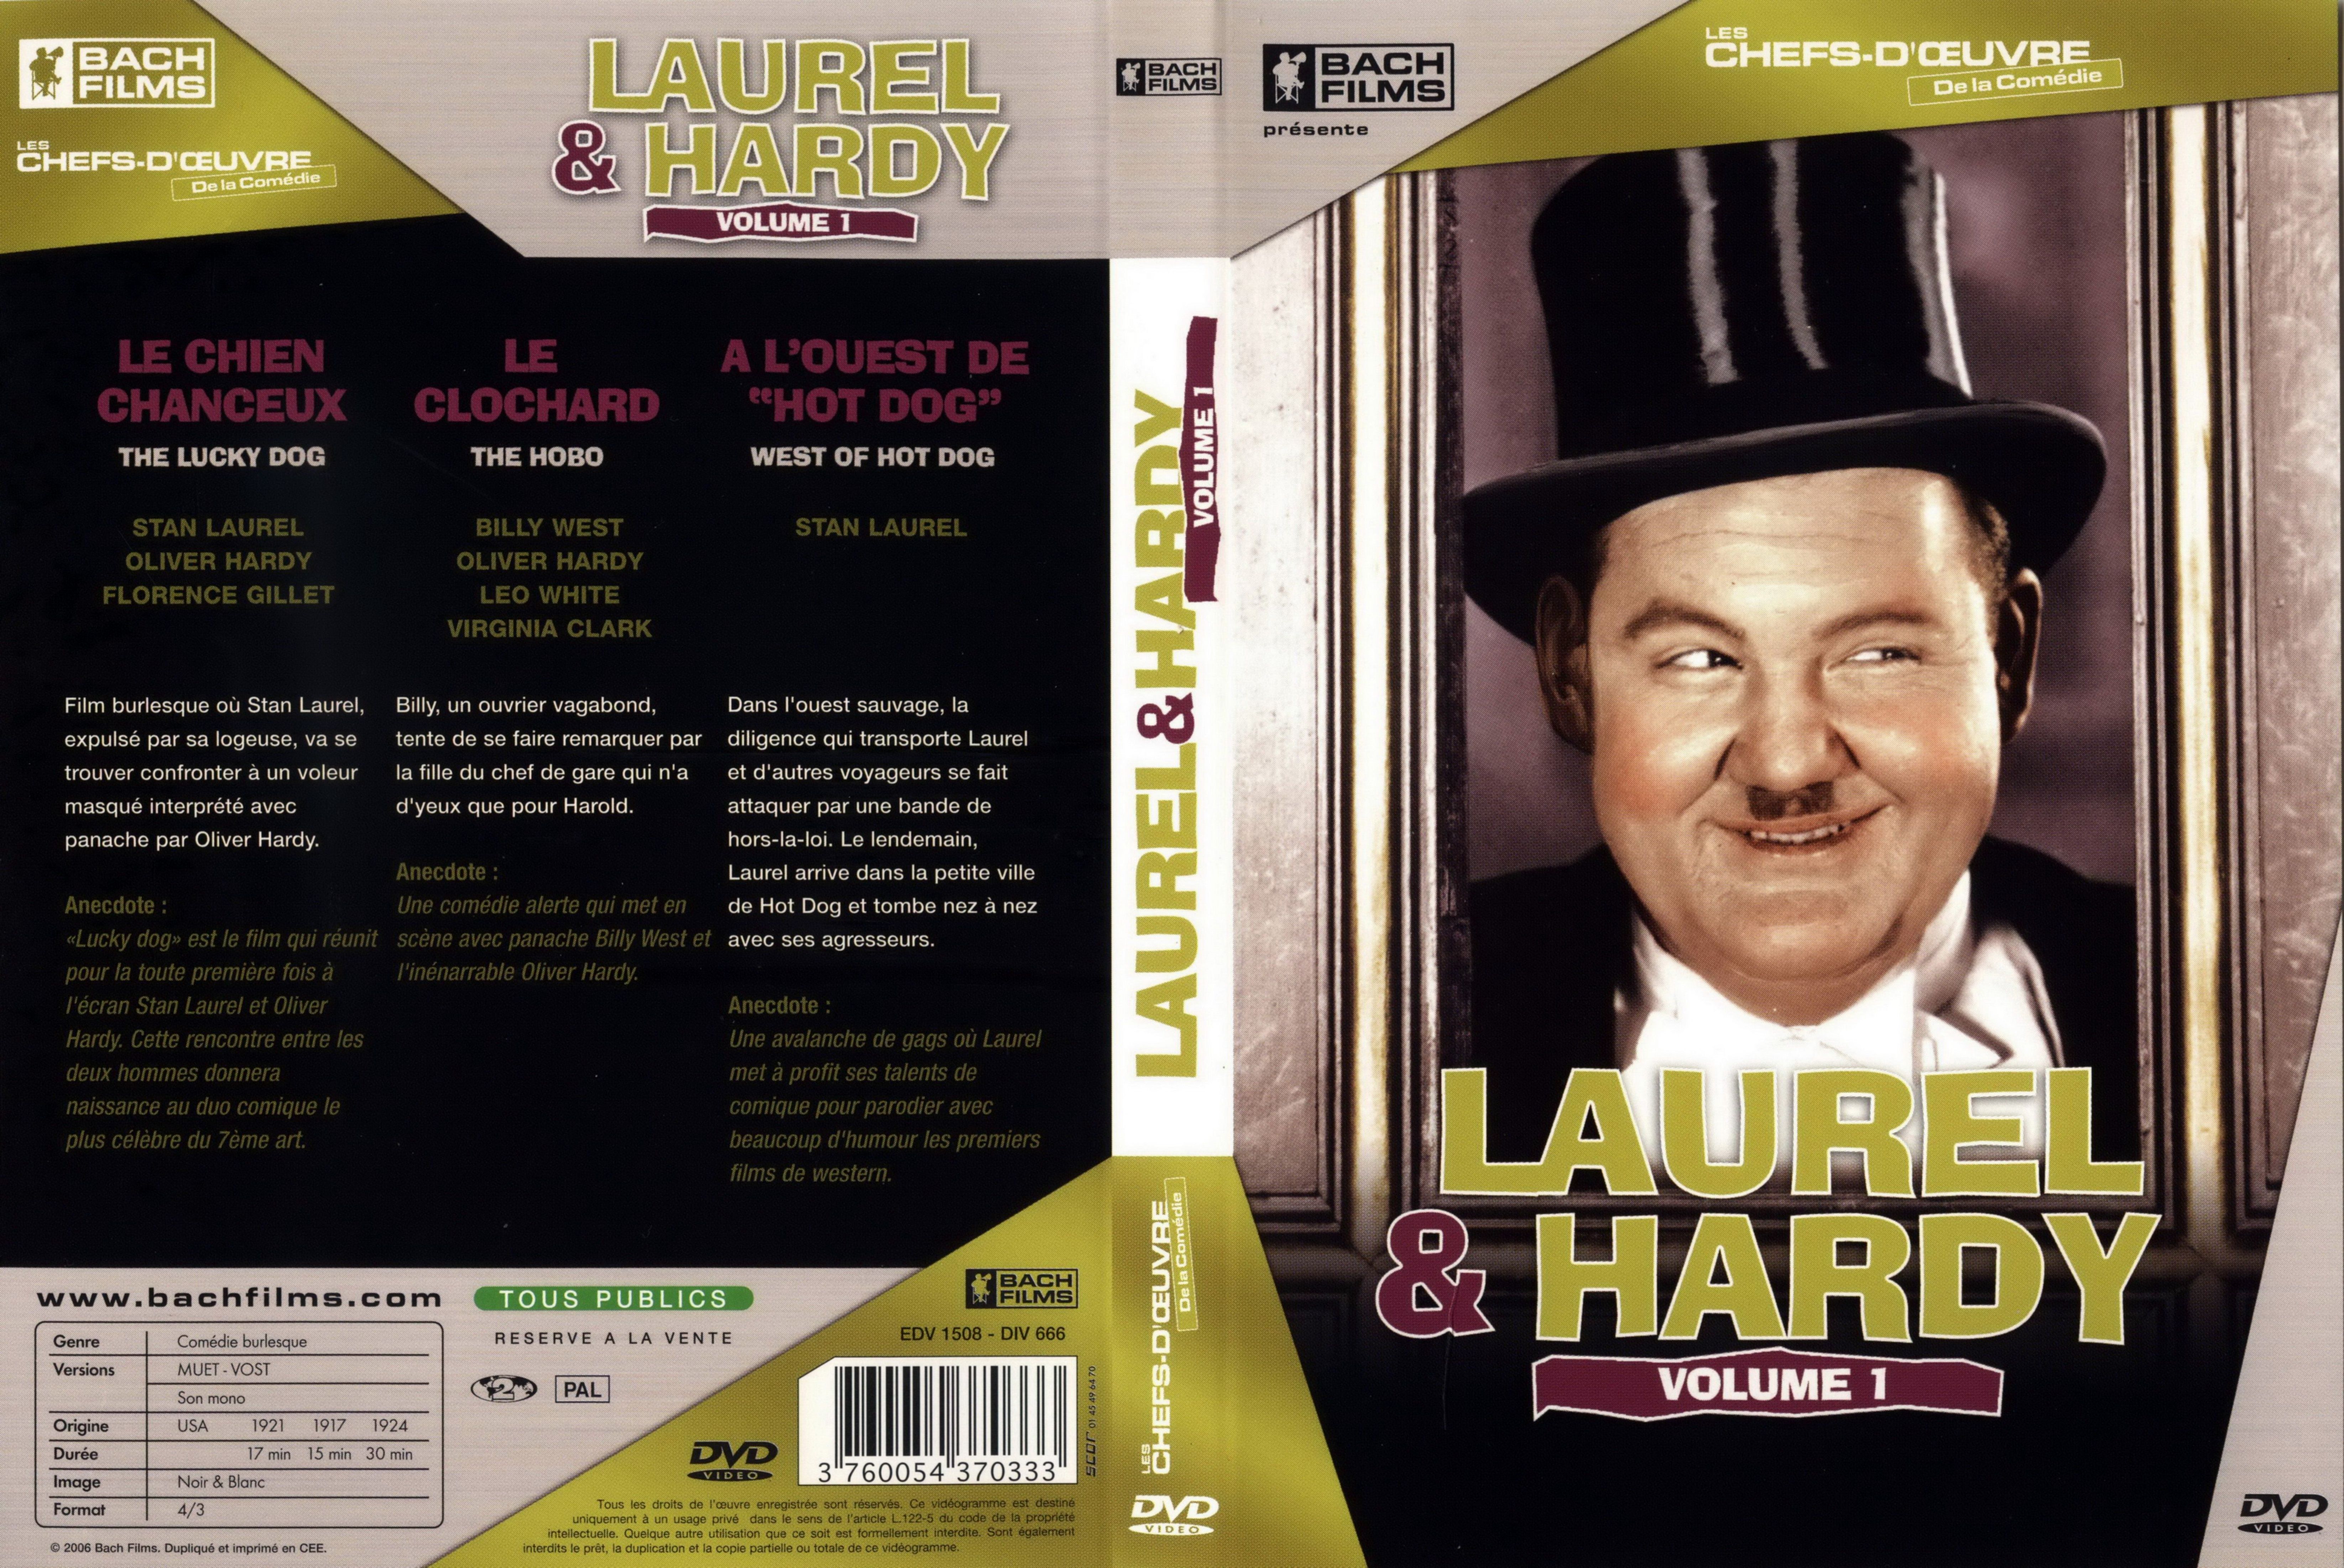 Jaquette DVD Laurel et Hardy vol 1